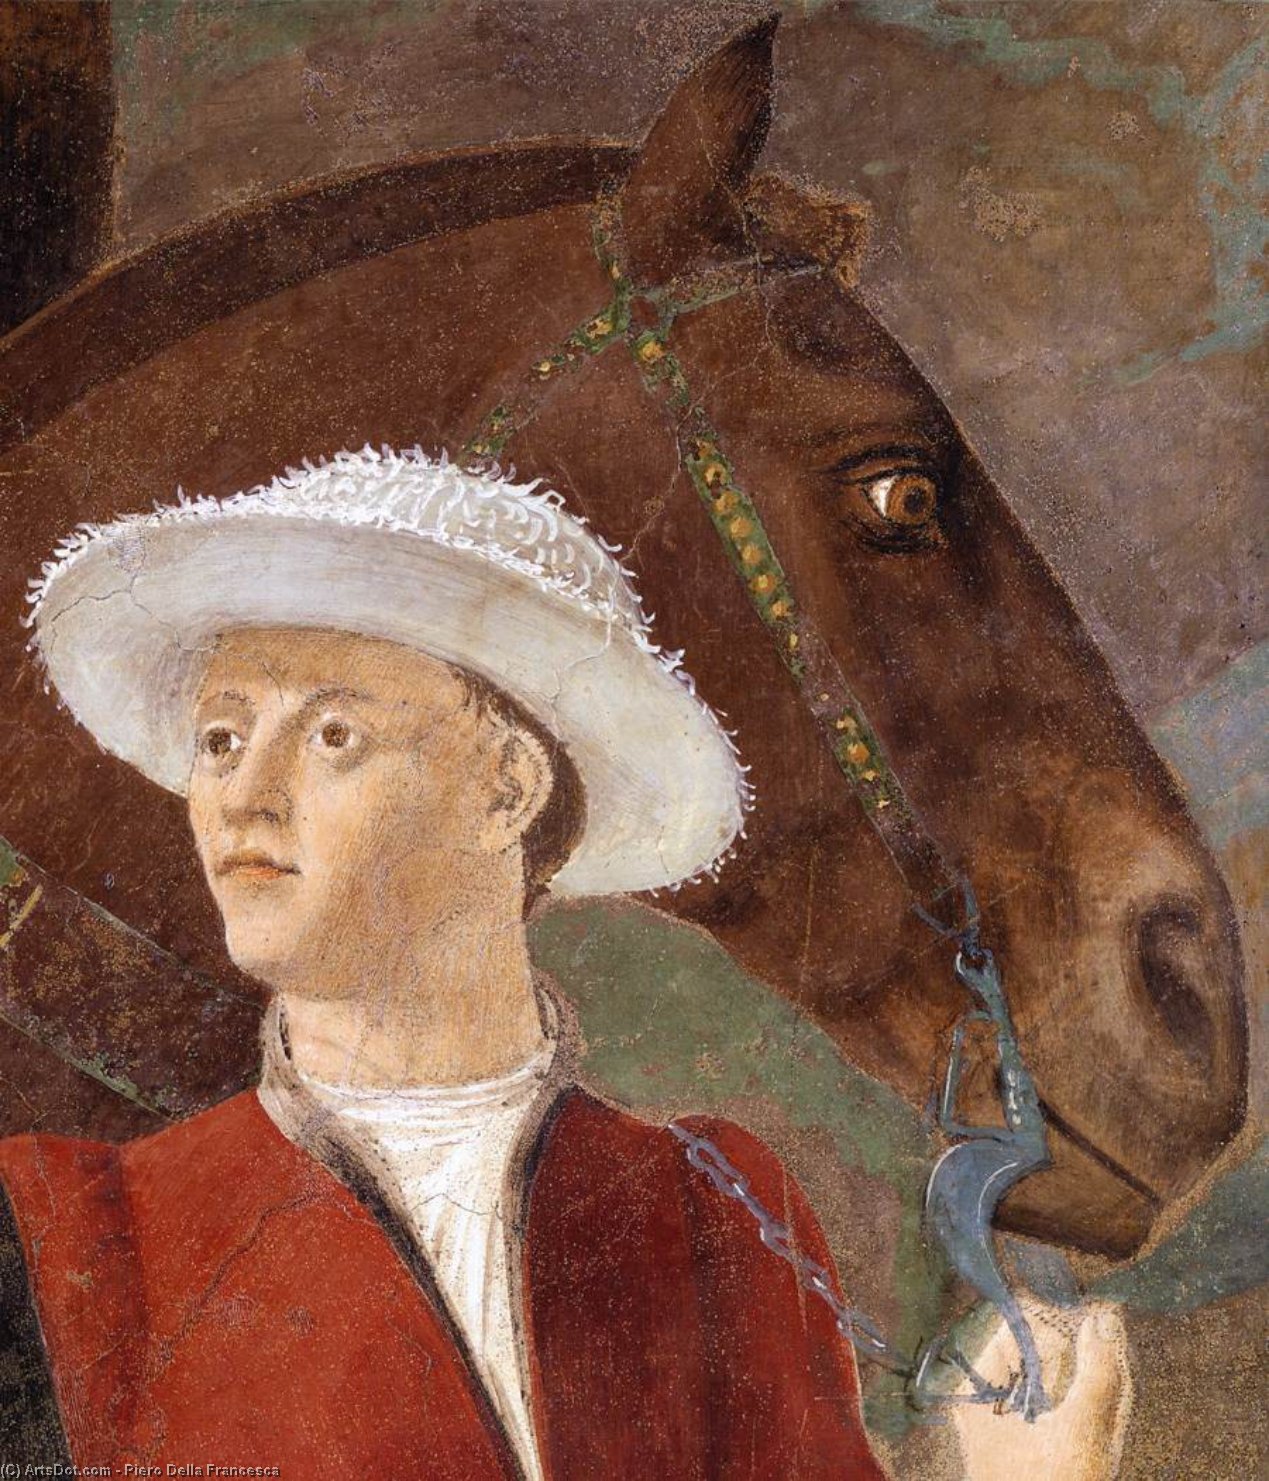 WikiOO.org - אנציקלופדיה לאמנויות יפות - ציור, יצירות אמנות Piero Della Francesca - 2a. Procession of the Queen of Sheba (detail) (15)